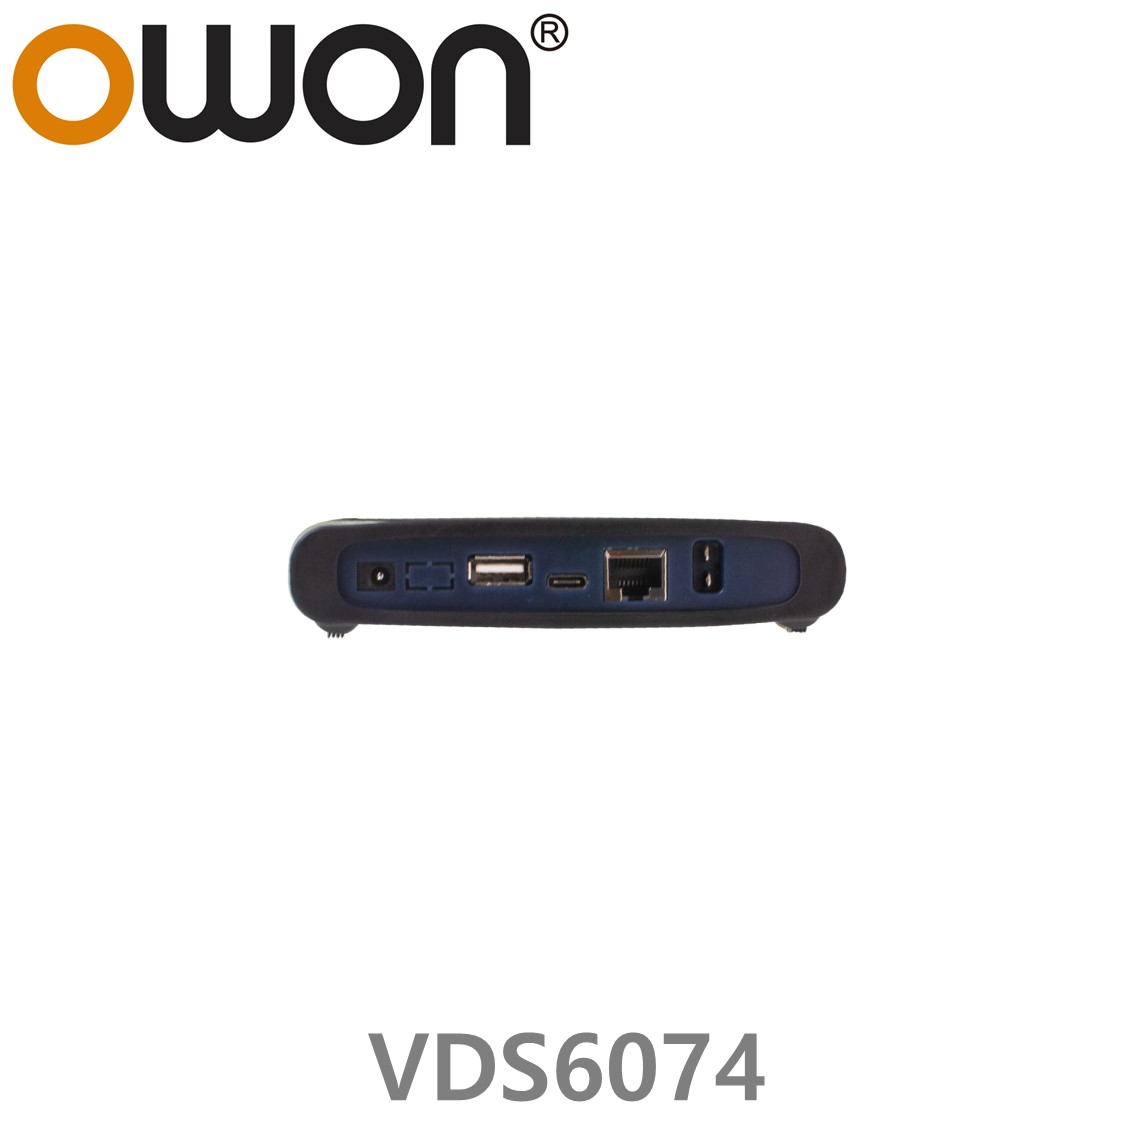 [ OWON ] VDS6074 PC 디지탈 오실로스코프 70MHz, 4CH, 1GS/s